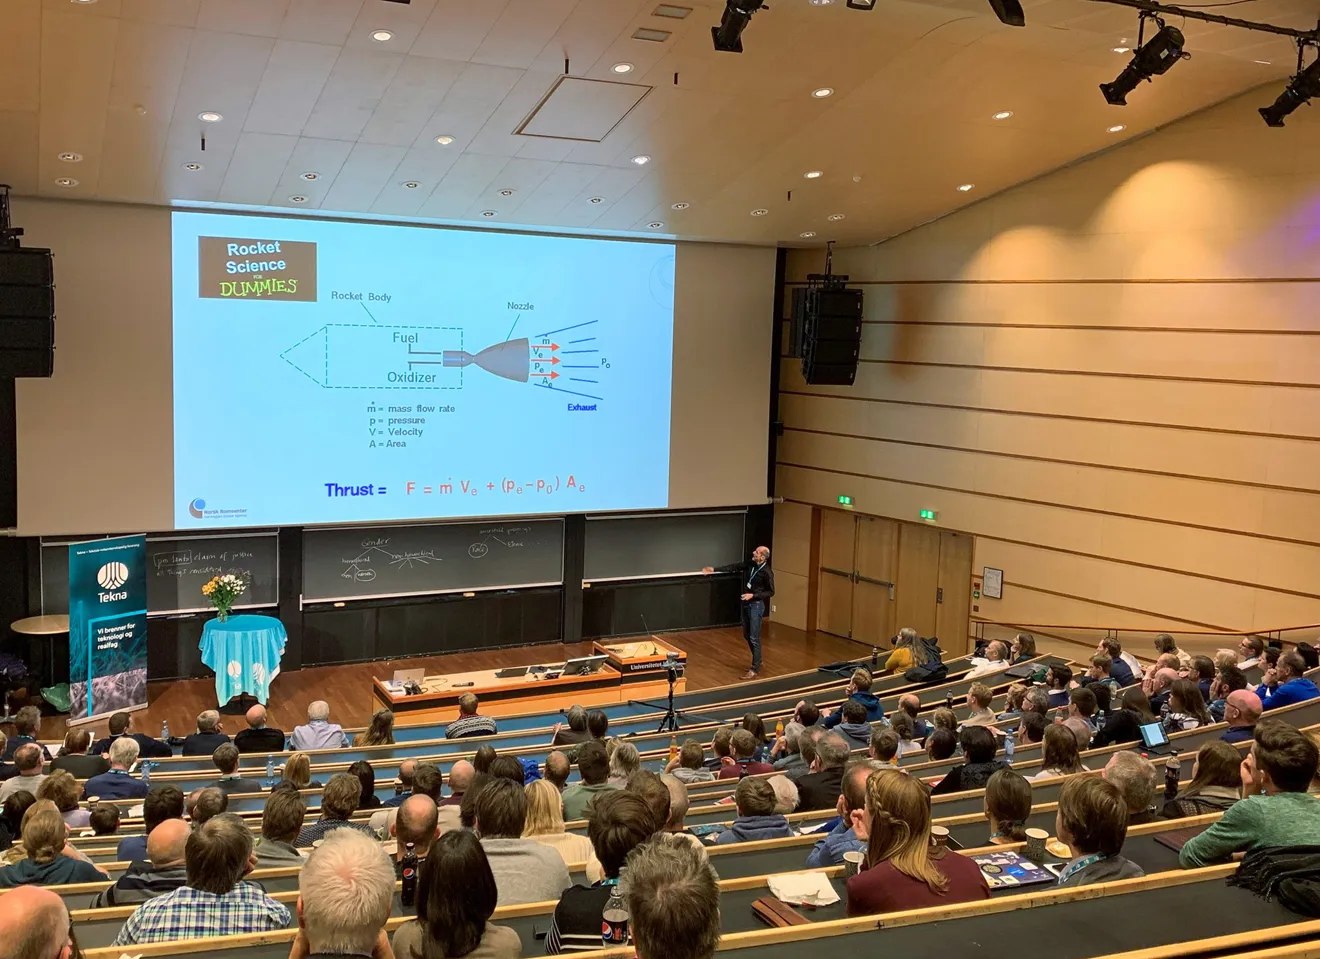 Fullsatt auditorium med foredrag om Rocket Scienes for Dummies